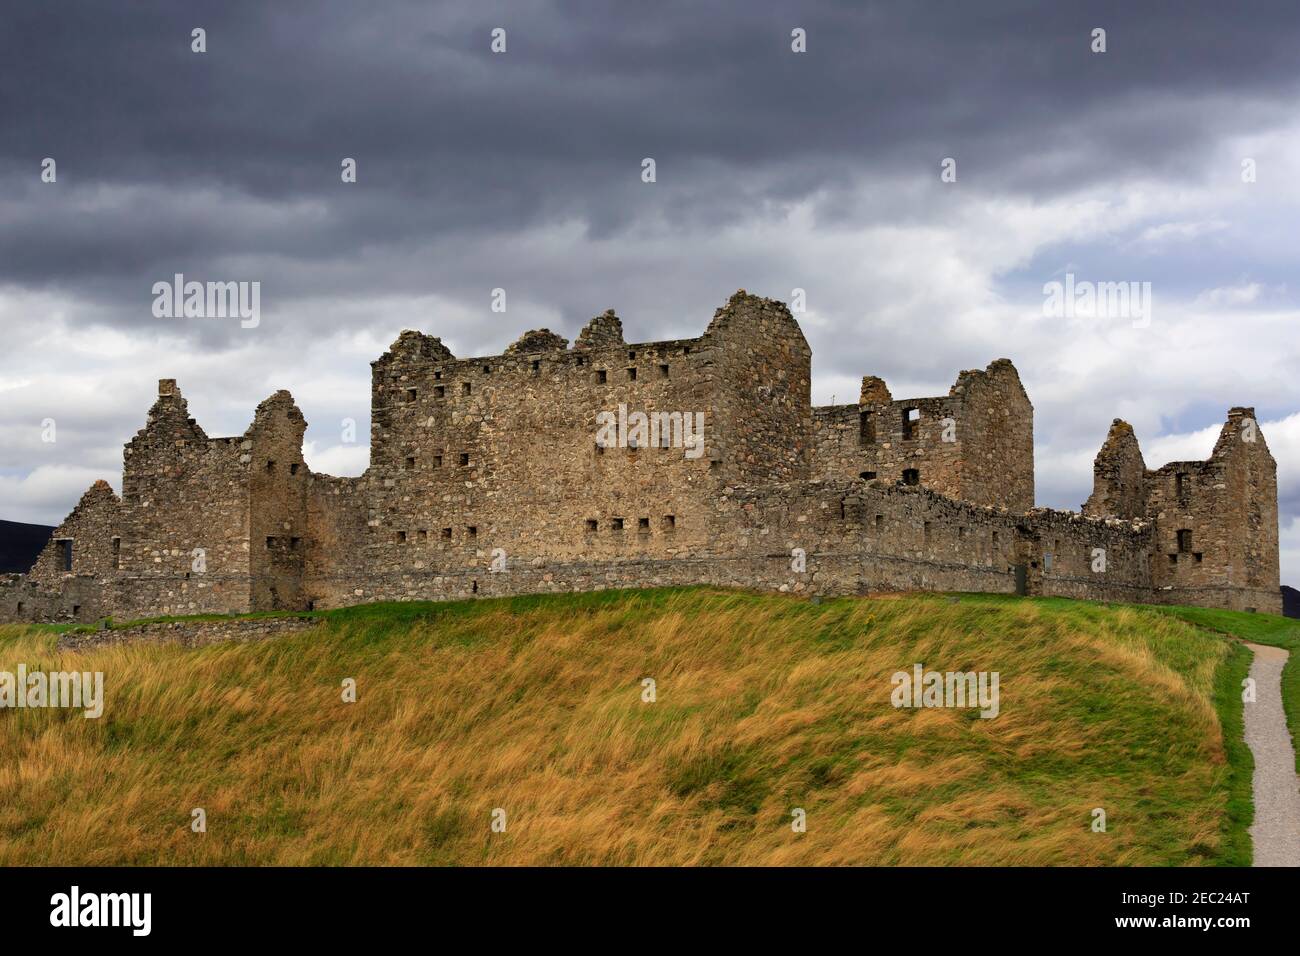 Ruthven Barracks, Kingussie, Scozia. Caserma fortificata costruita nel 1719 sul sito di castelli precedenti dopo l'ascesa giacobita. Foto Stock